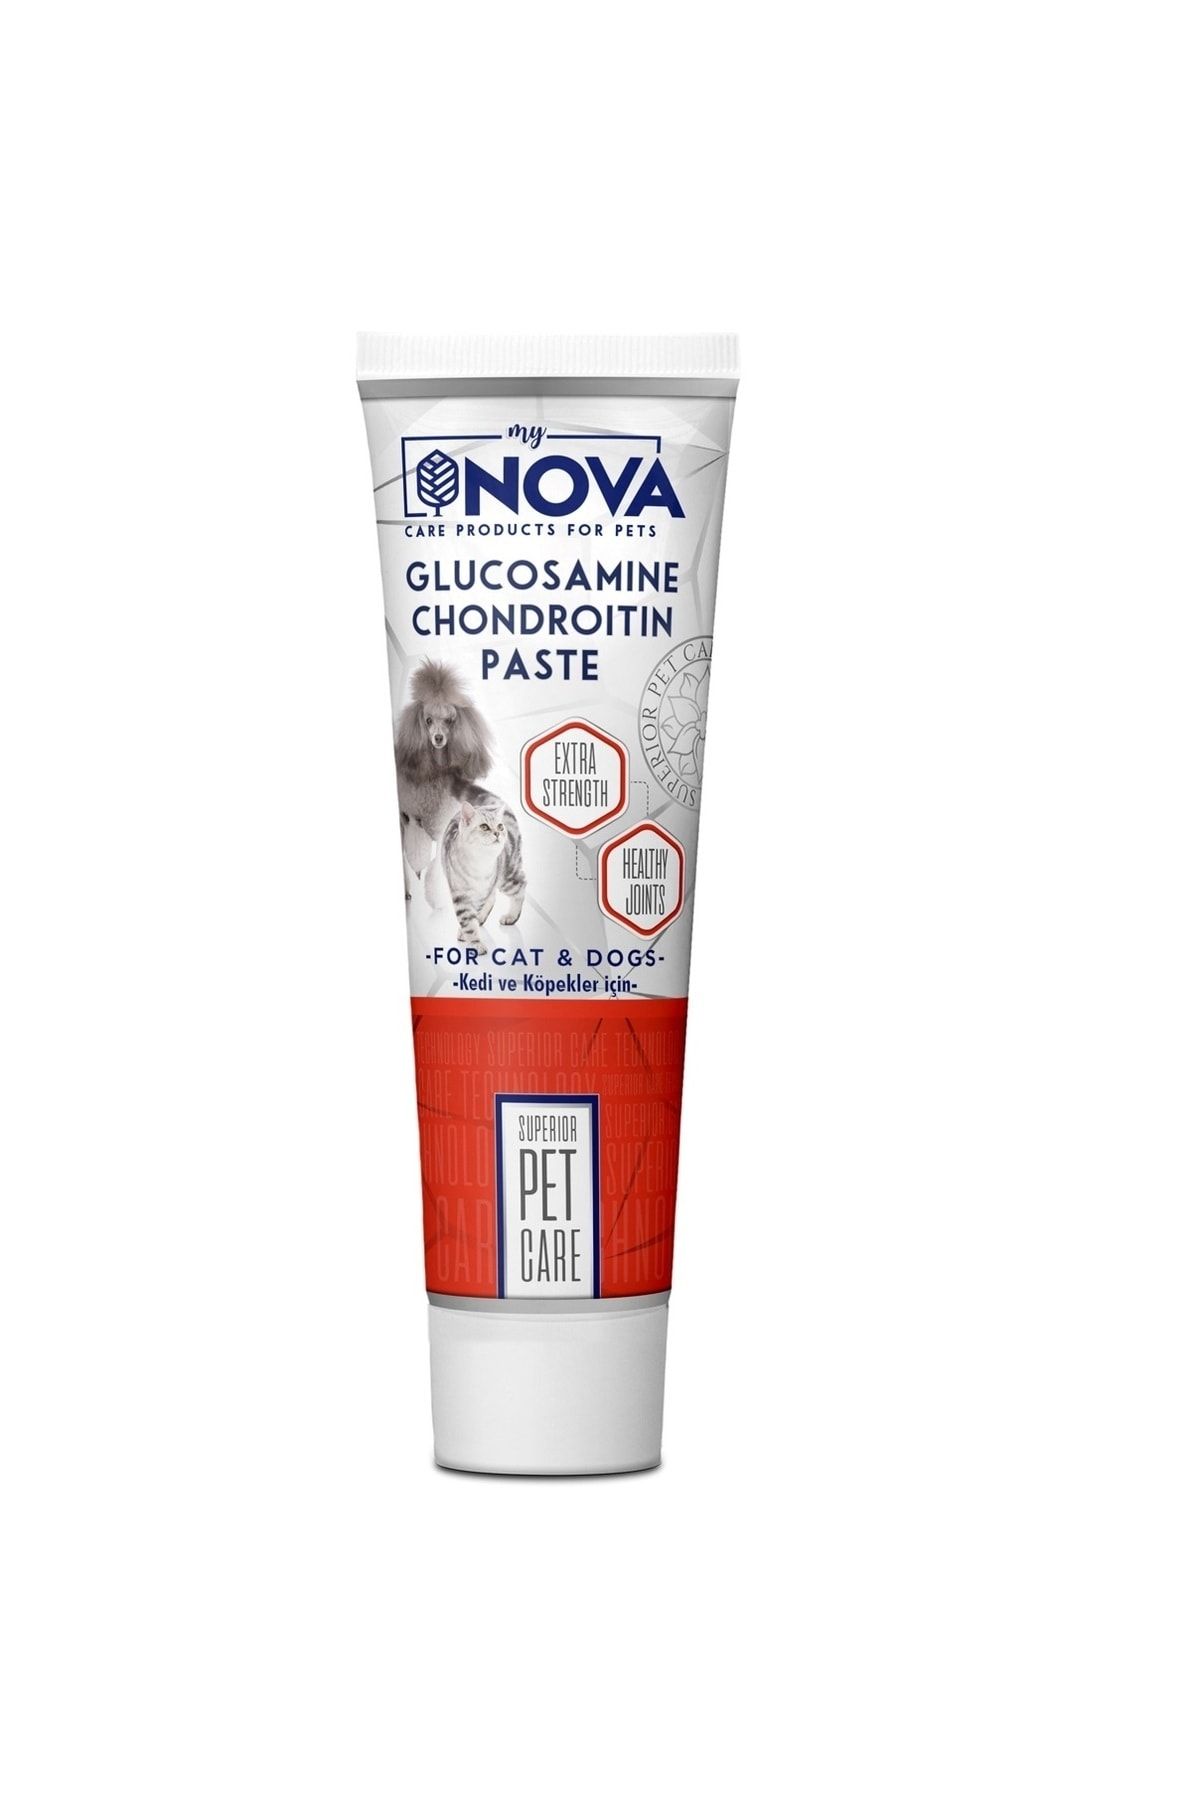 Nova glucosemine kedi ve köpekler için eklem güçlendirici malt paste 100gr